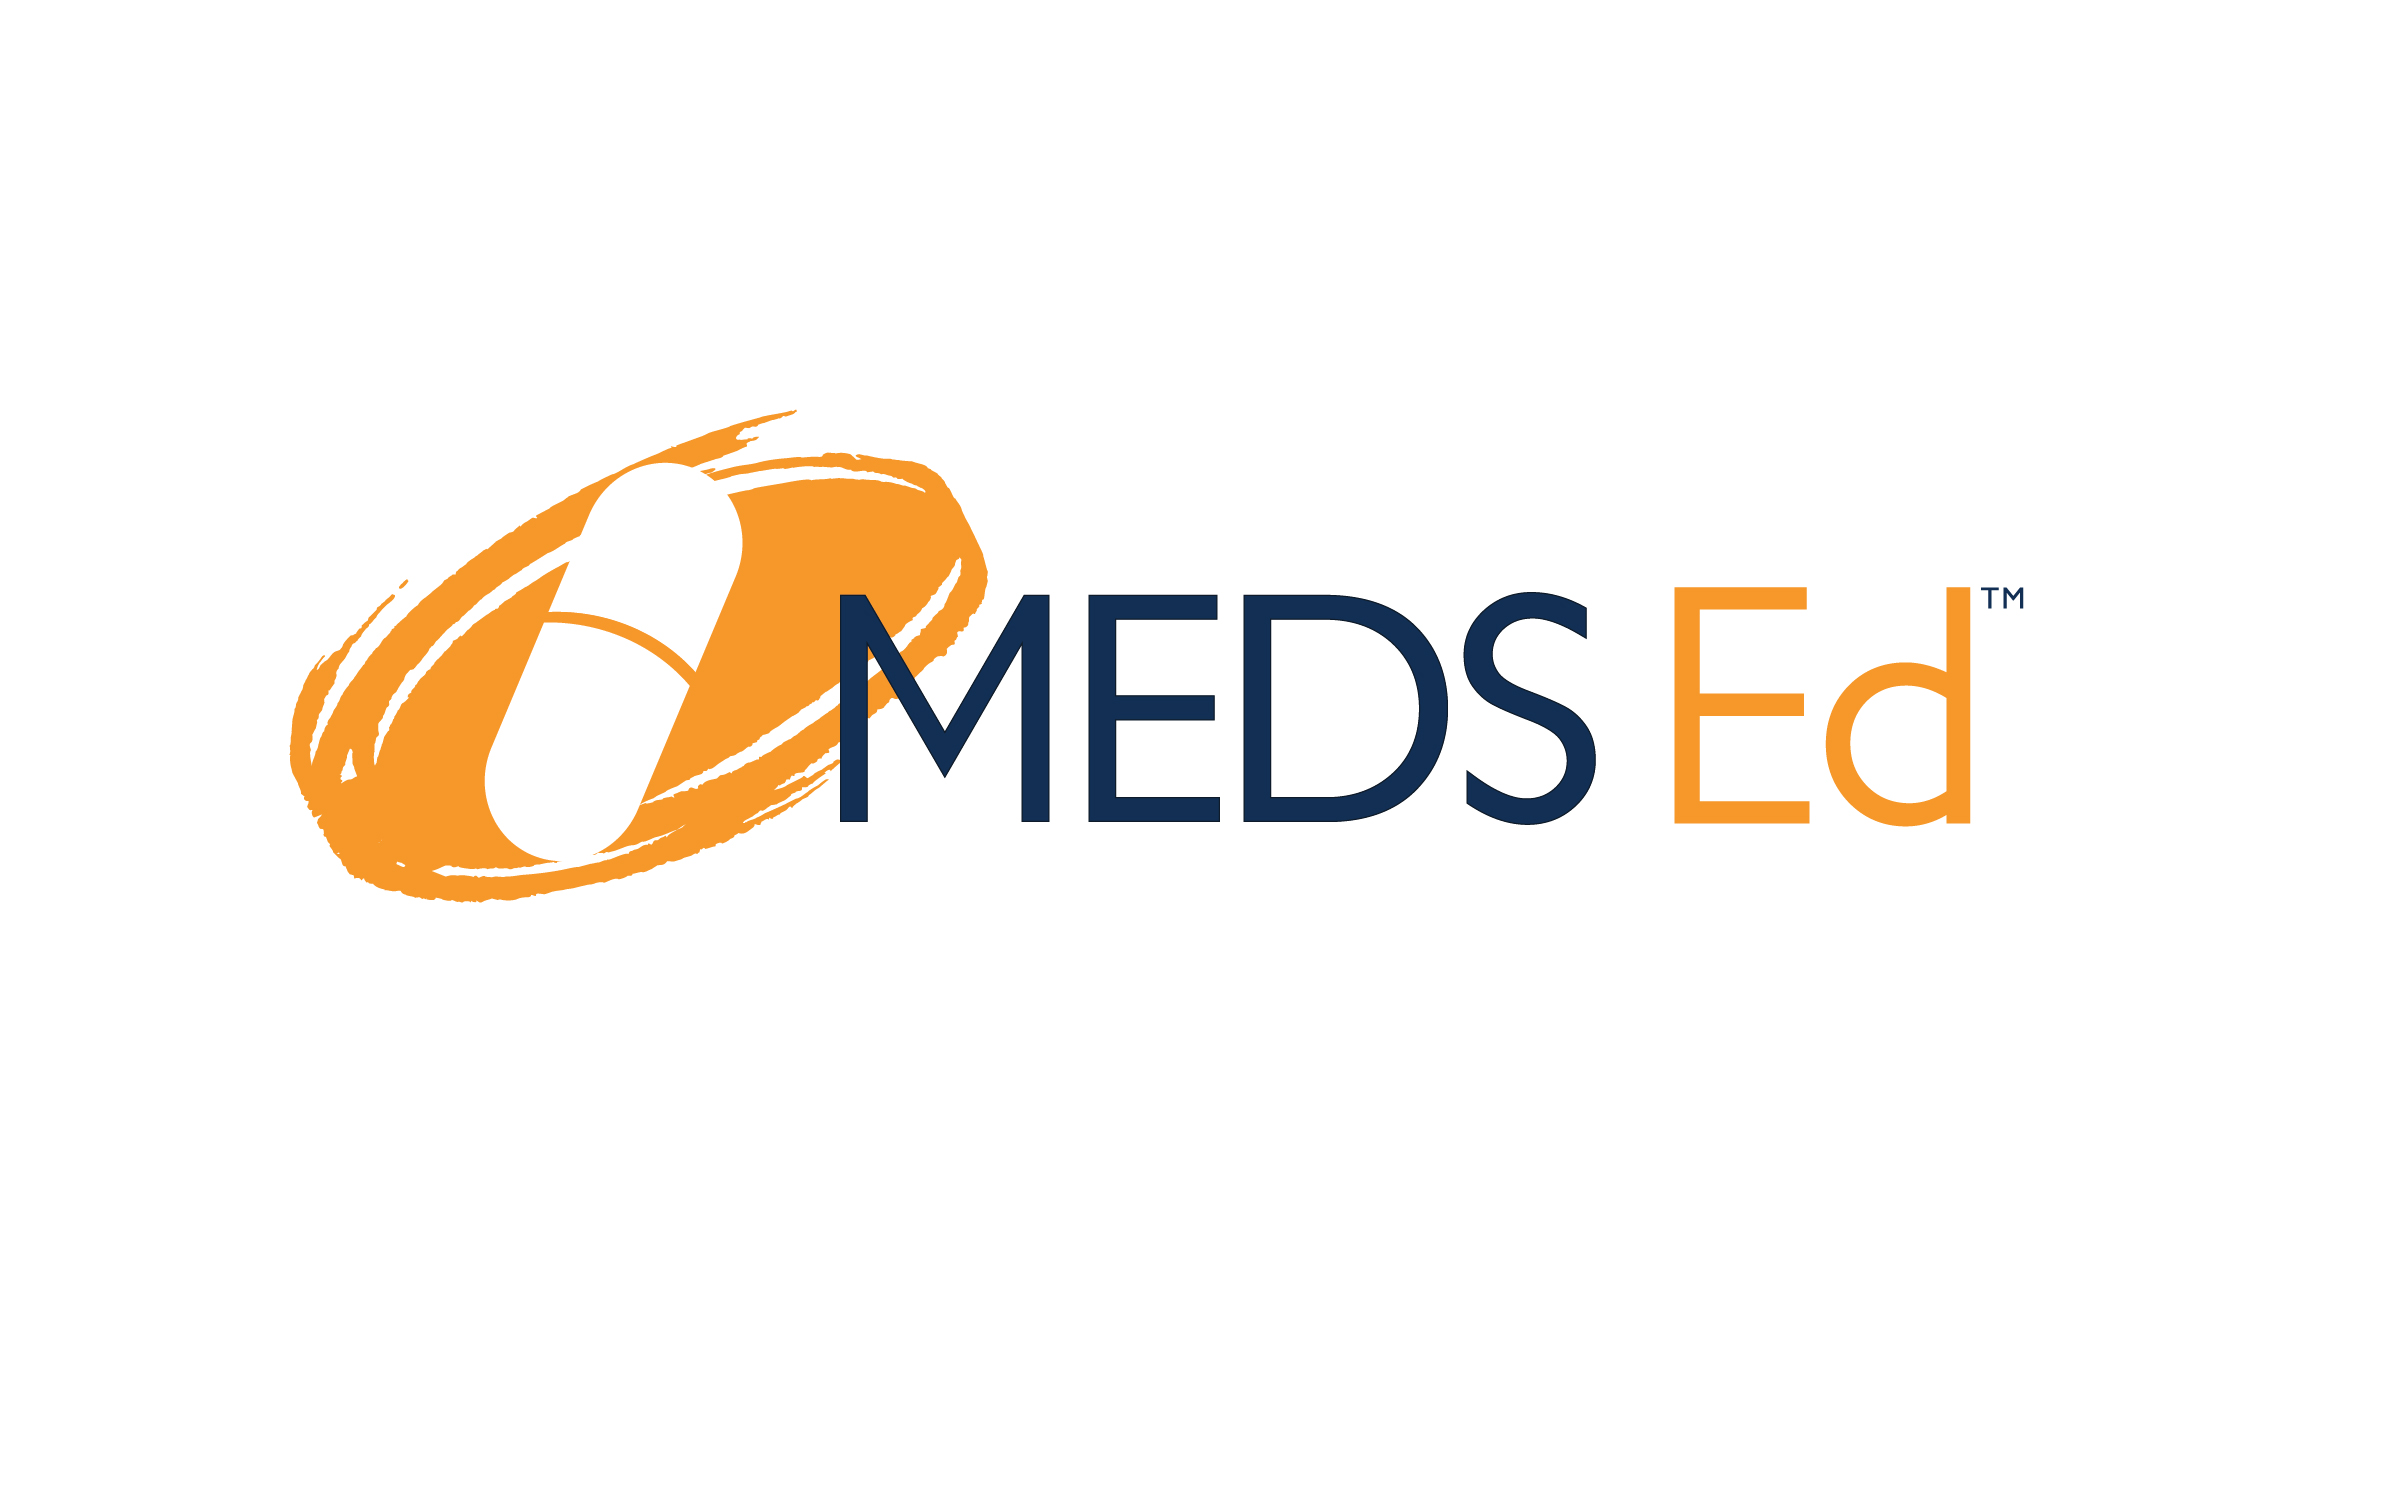 MEDS Ed logo